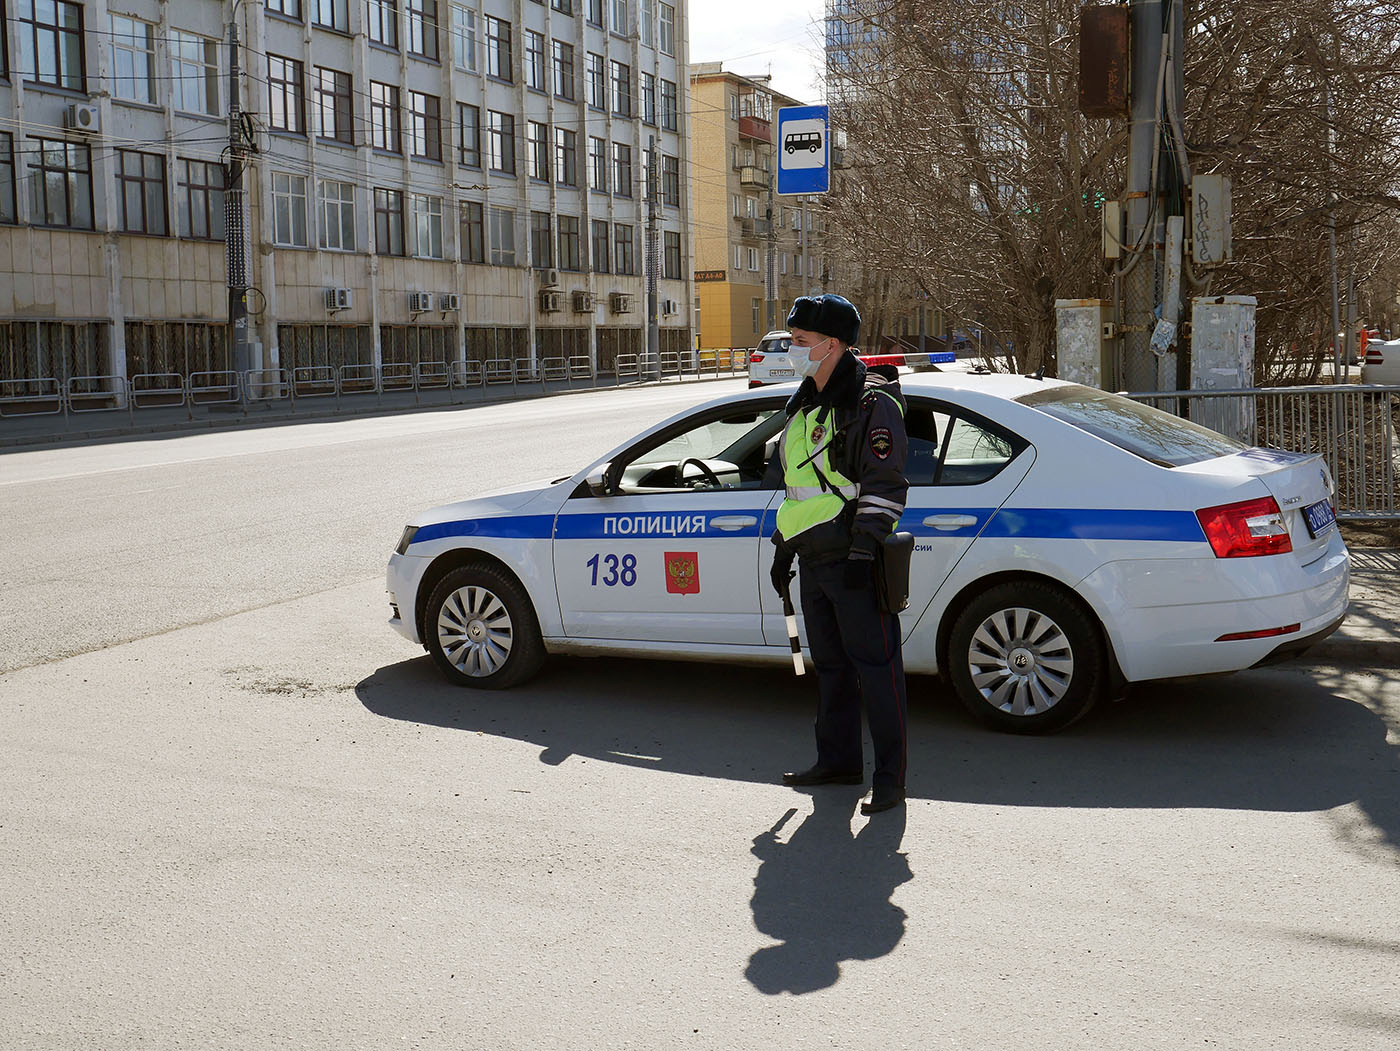 Полиция Челябинск. Г30 полиция.